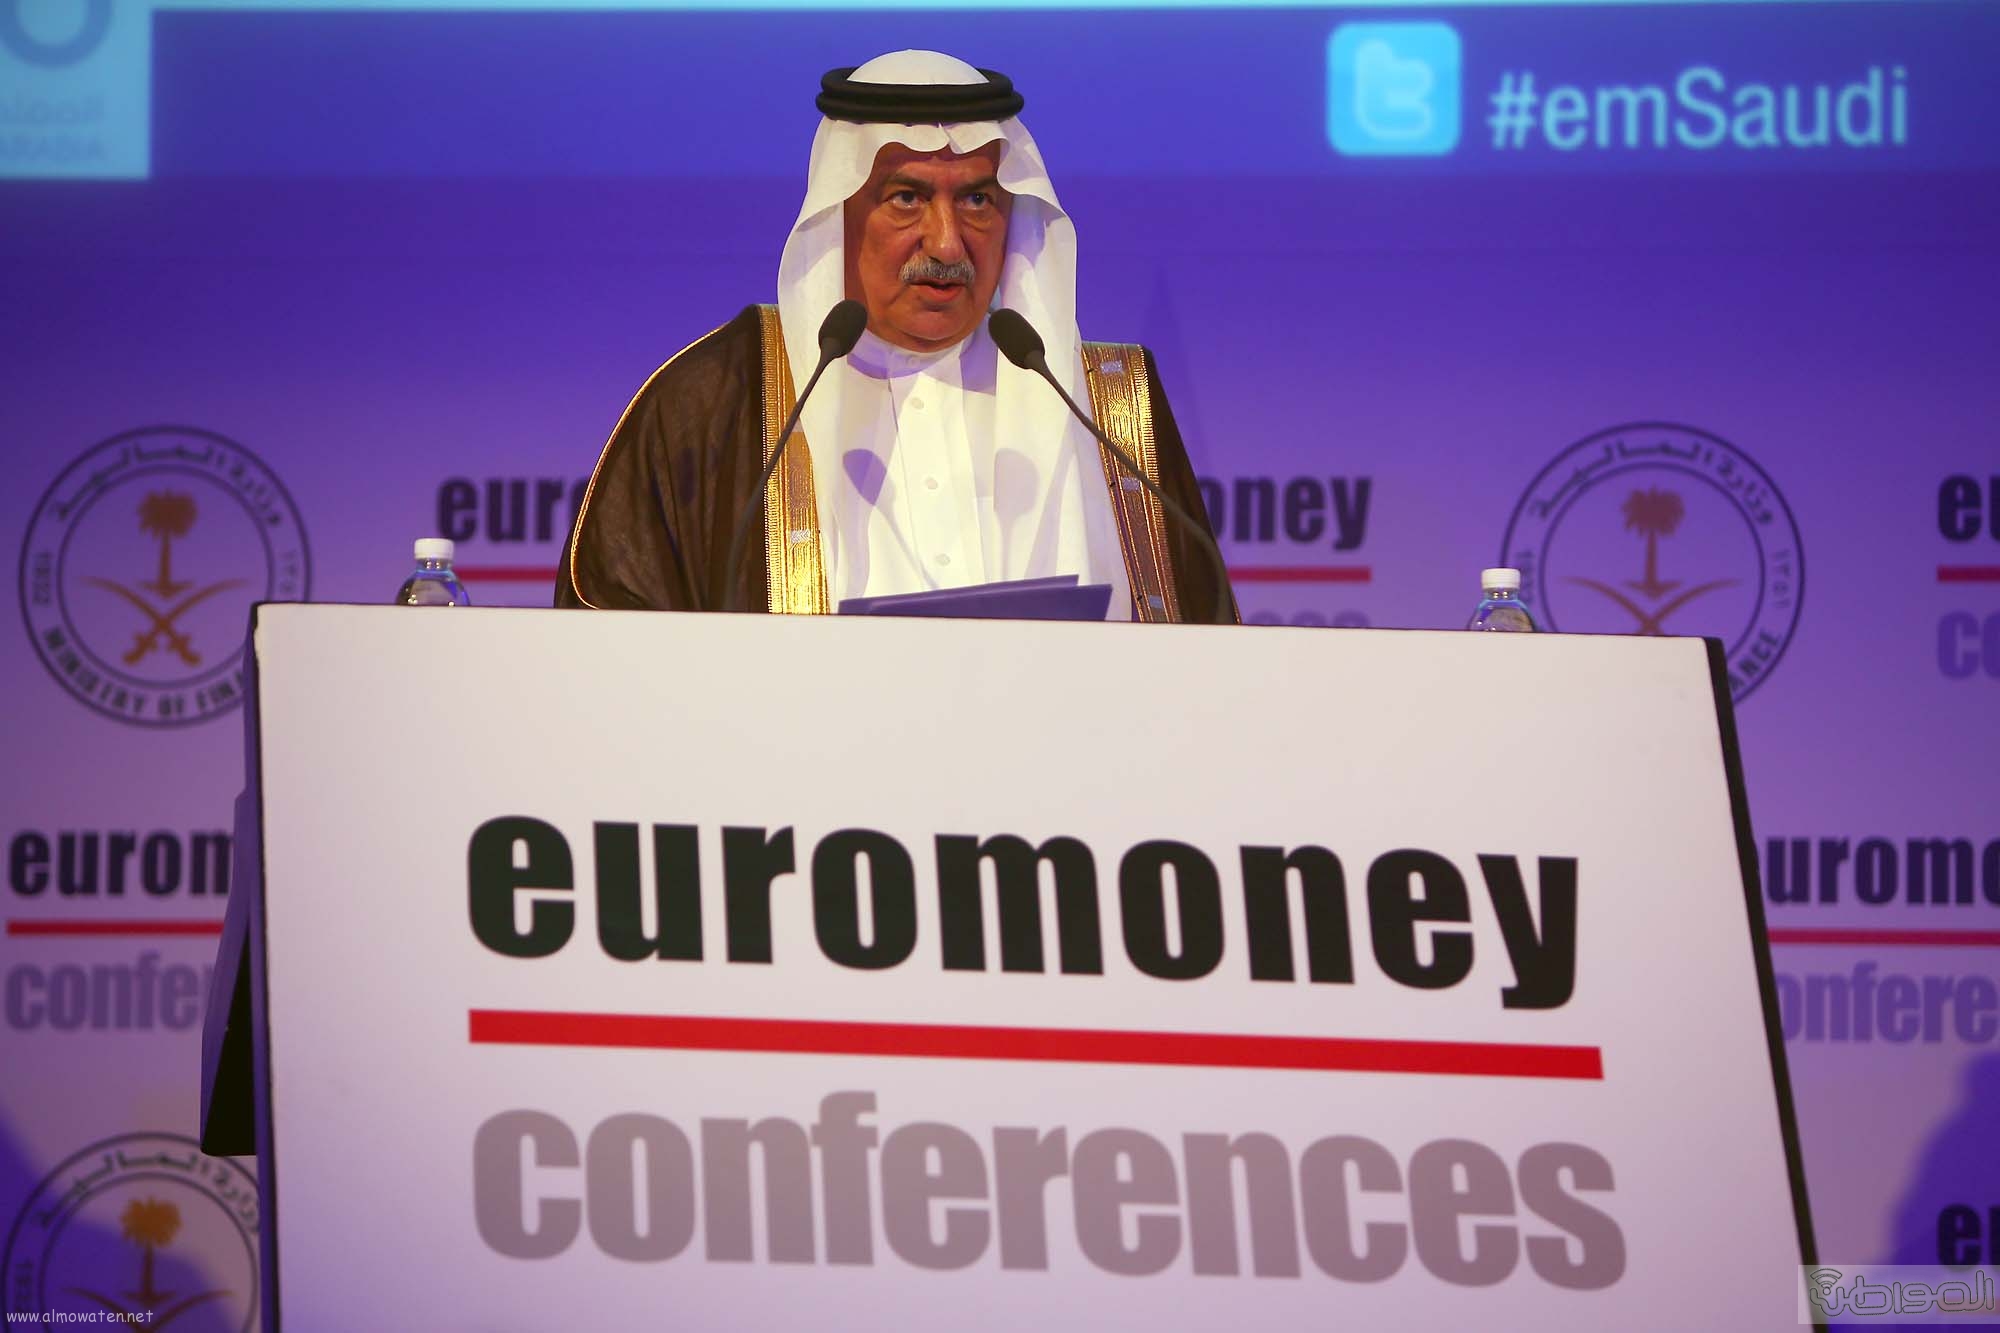 وزير المالية: مؤتمر يورومني فرصة لمناقشة #رؤية_السعودية_2030